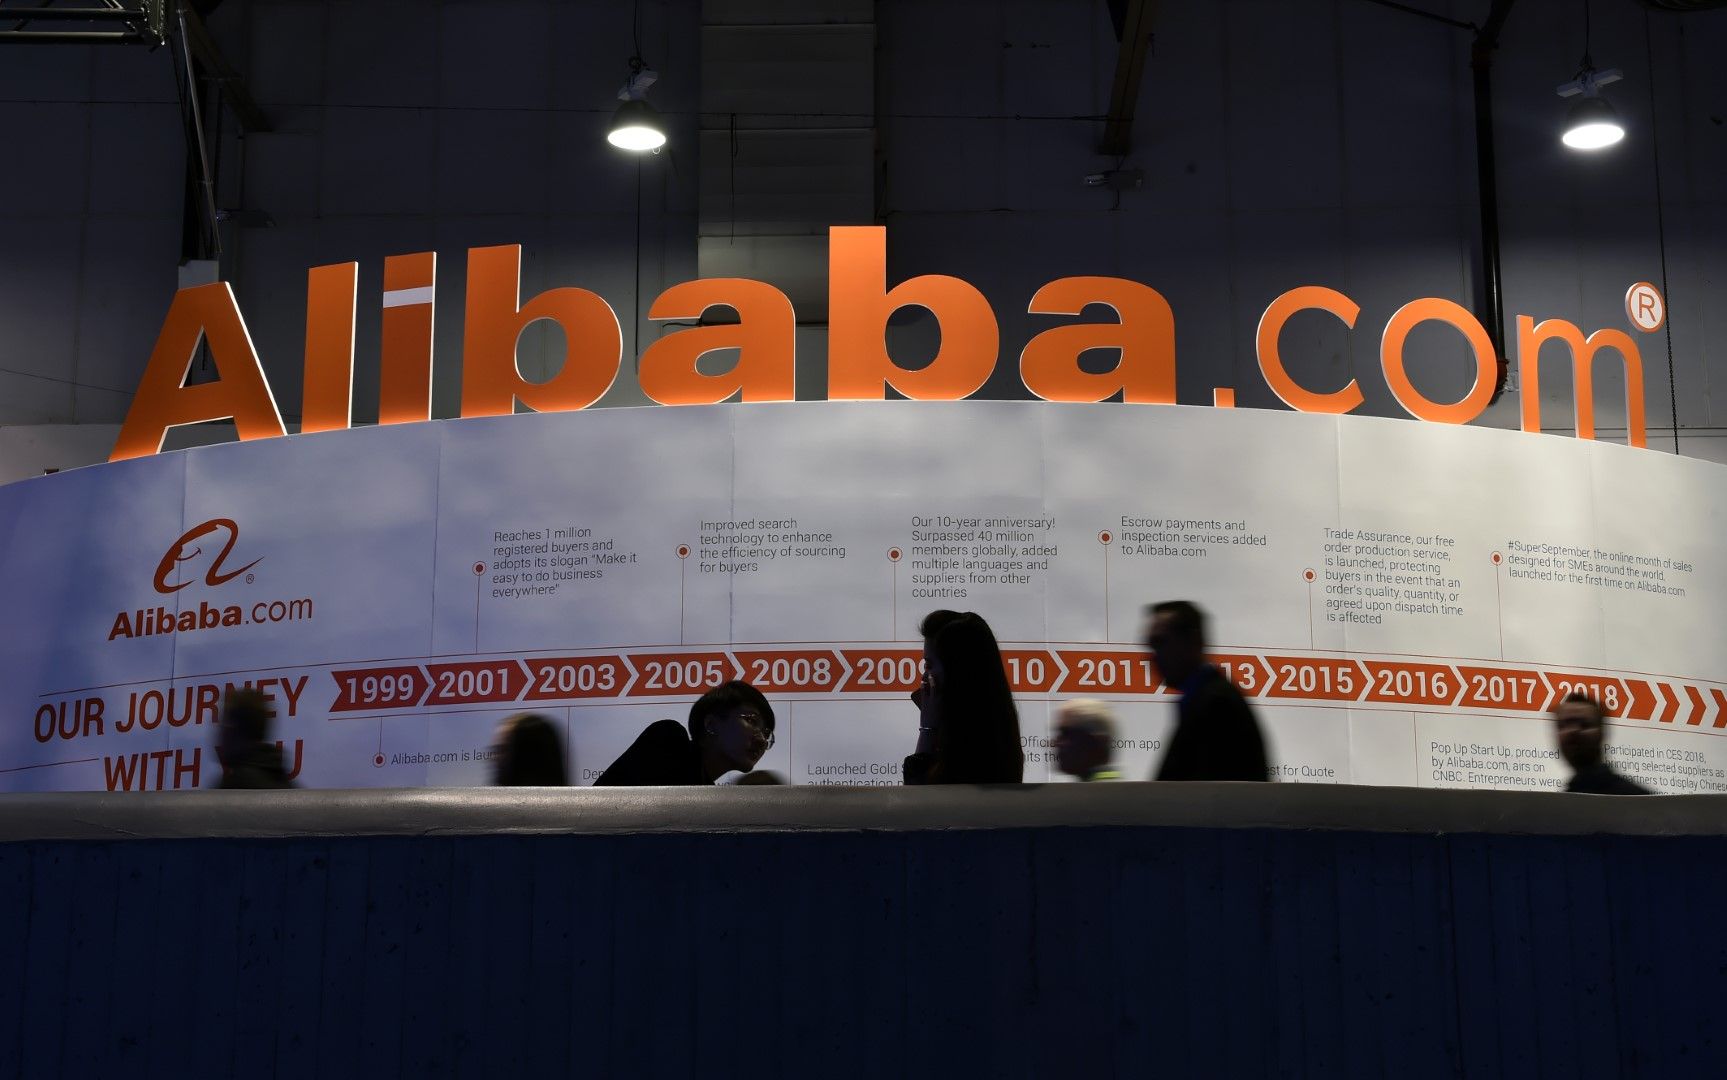 Антимонополният орган на Китай наложи рекордна глоба от 2,75 млрд. долара на "Алибаба" (Alibaba) - гигантът в електронната търговия